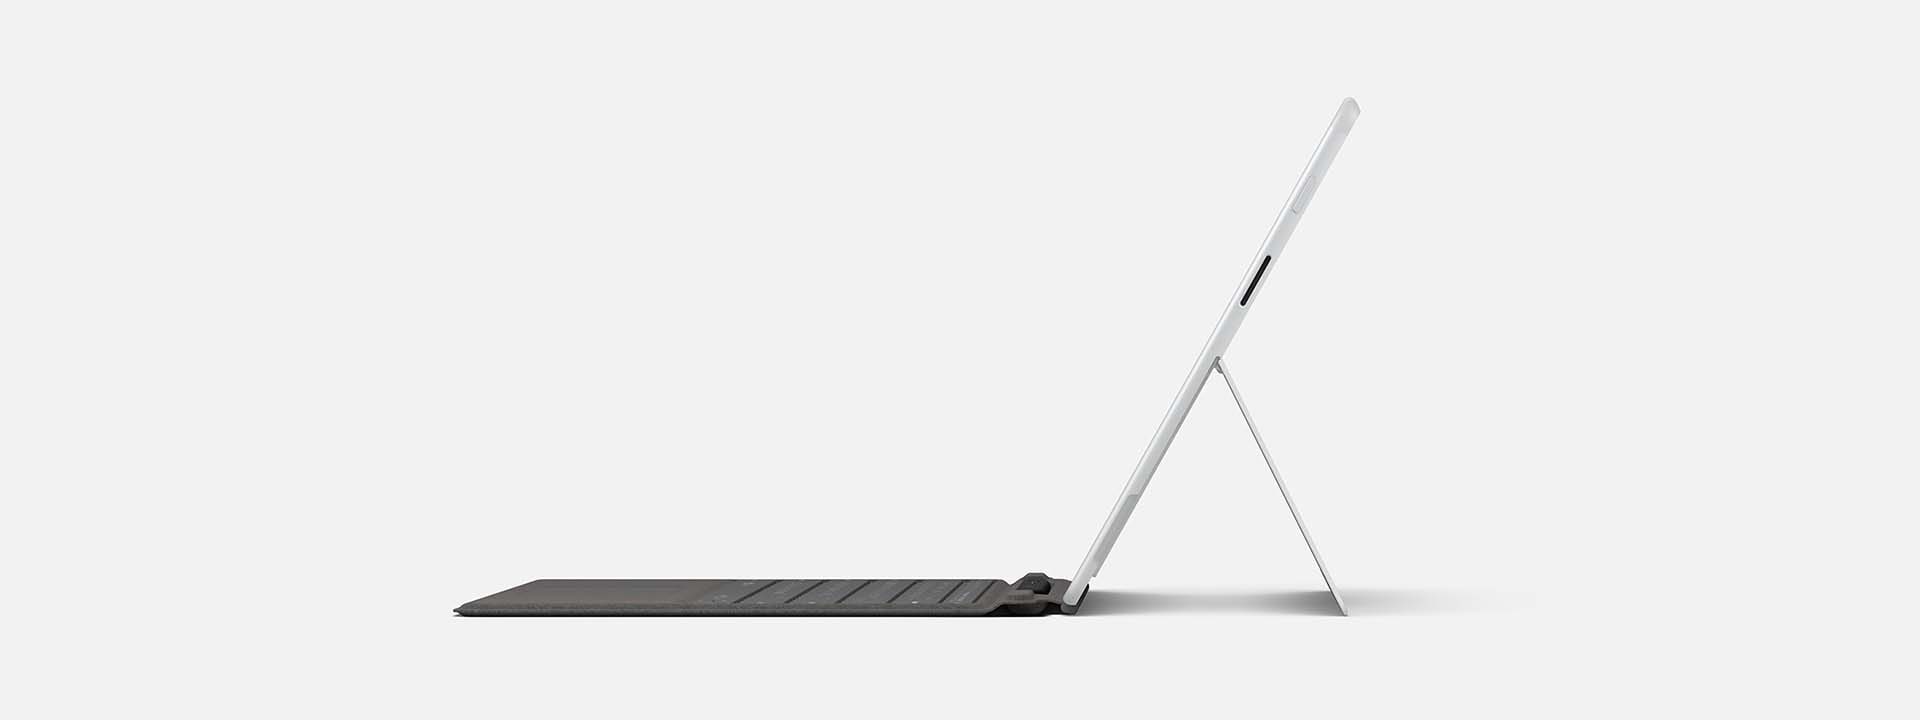 Profiilikuva Surface Pro X -laitteesta